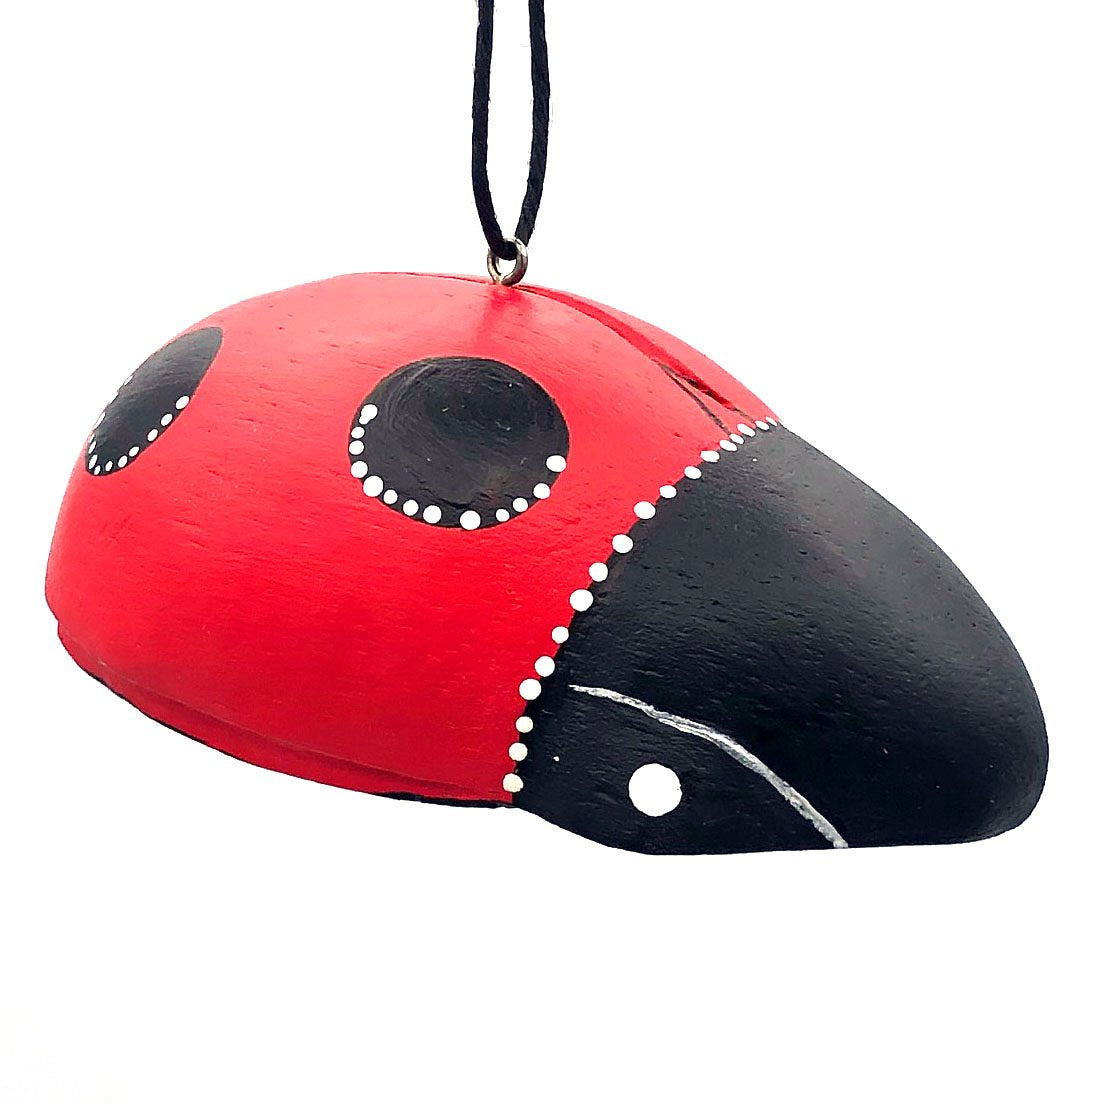 Ladybug Balsa Ornament